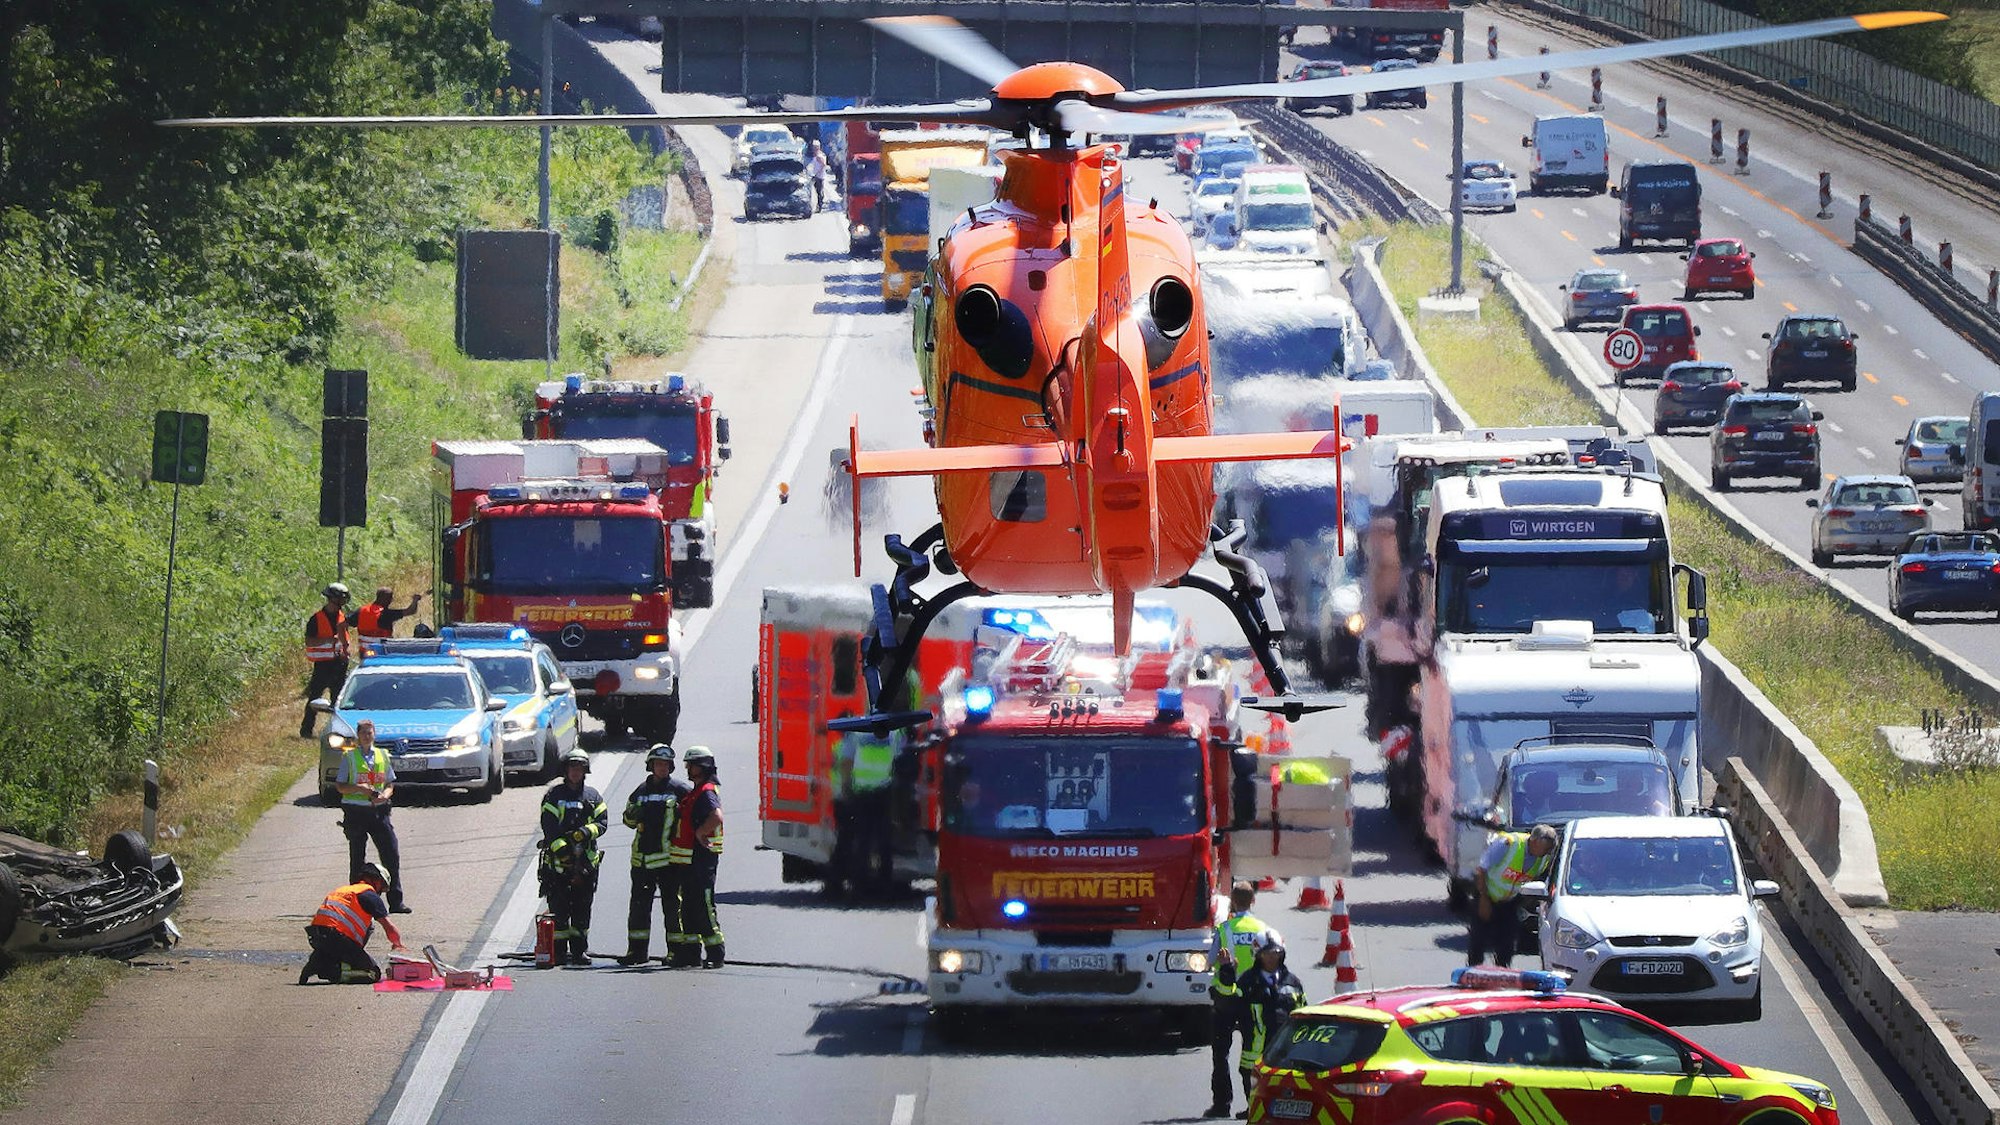 02.07.2018, Nordrhein-Westfalen, Ratingen: Ein Rettungshubschrauber hebt nach seinem Einsatz auf der Autobahn 3 ab. Ein Auto hatte sich bei einem Unfall überschlagen, es gab mehrere verletzte Personen.